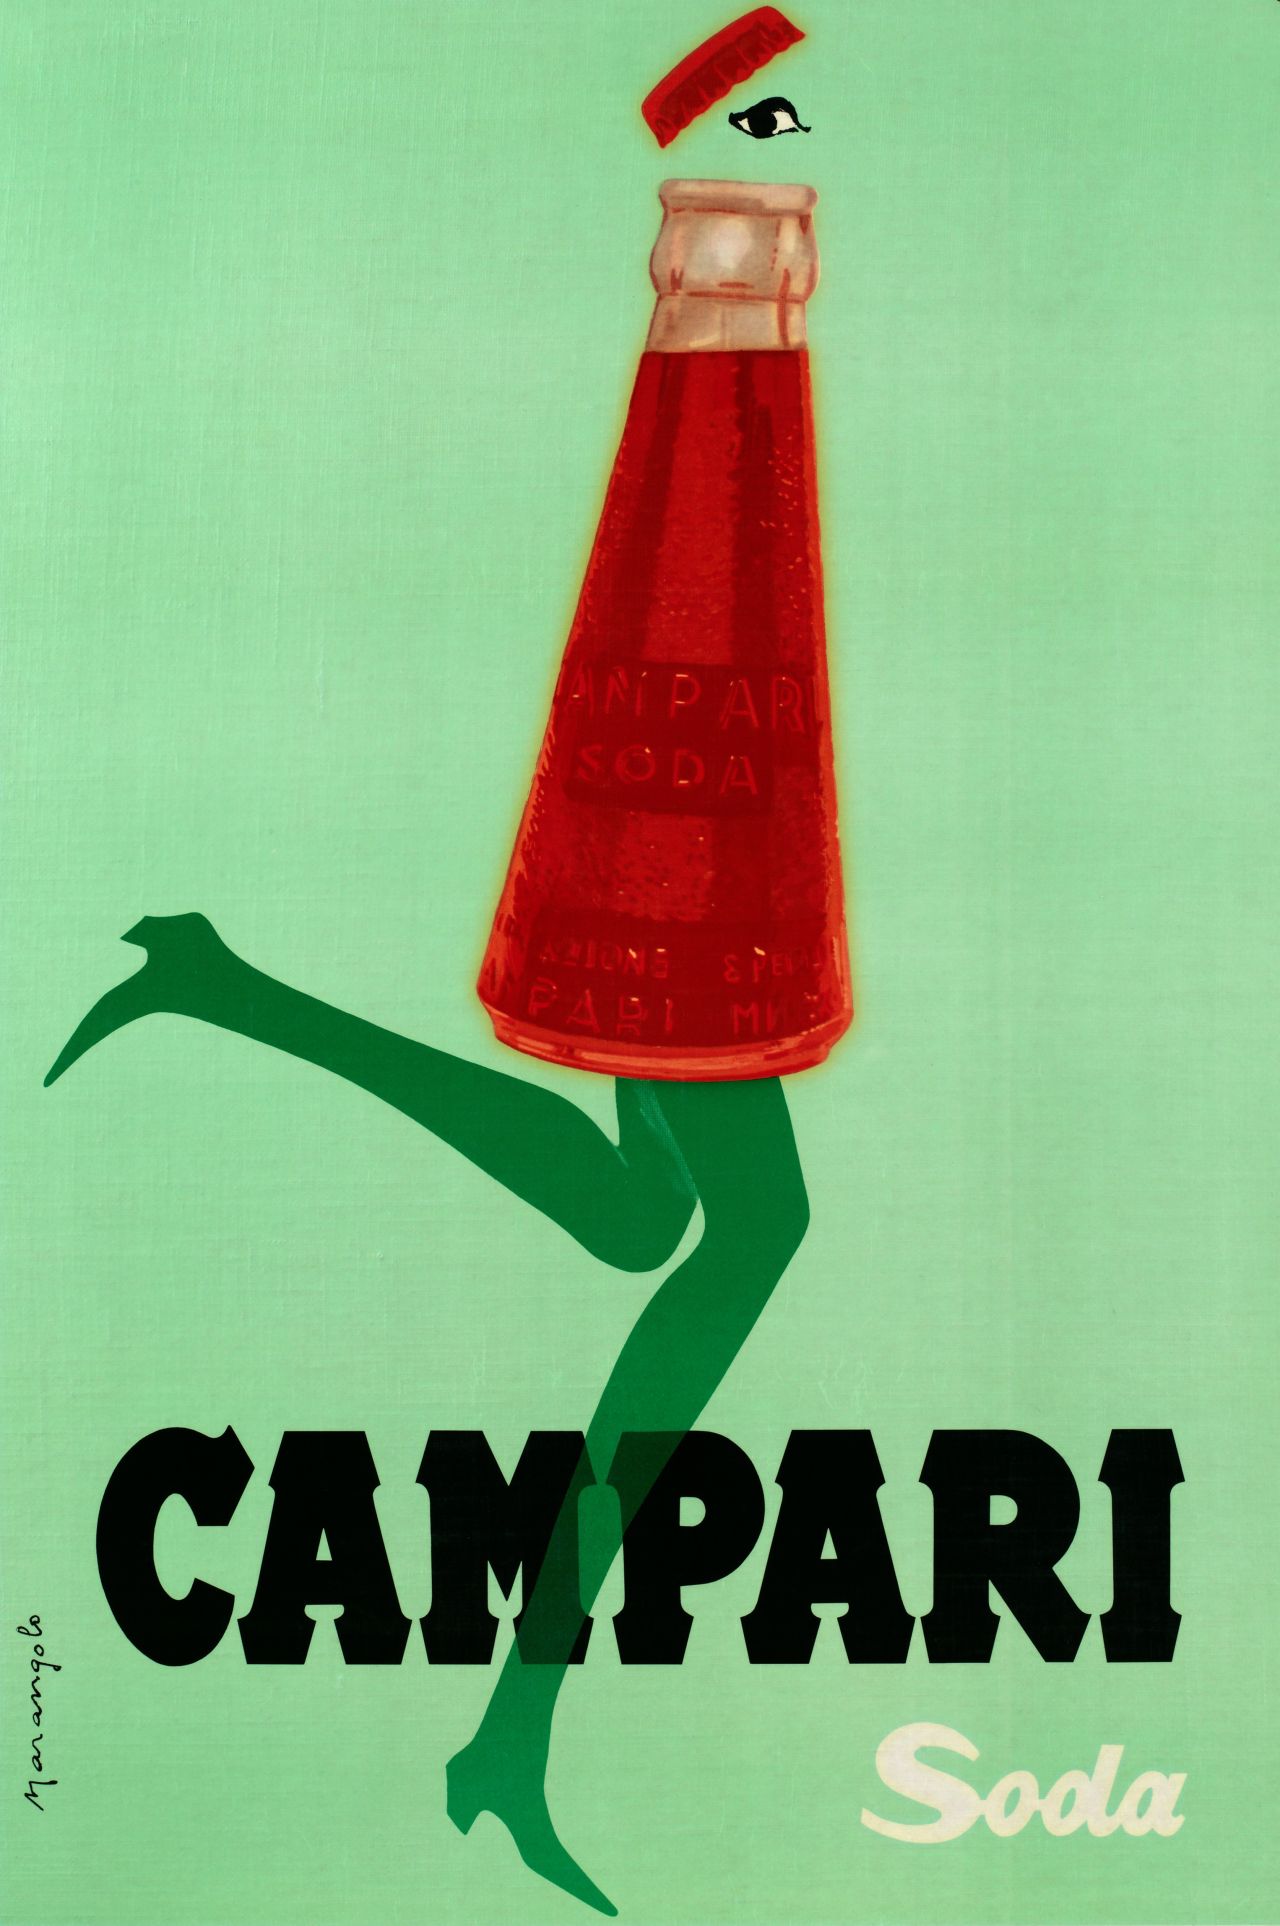 Franz Marangolo, Campari Soda corre col tempo!, 1960s. Campari Soda is in Line with the Times! Lithographic colour print on paper. All images courtesy: Archivio Galleria Campari, Milan.